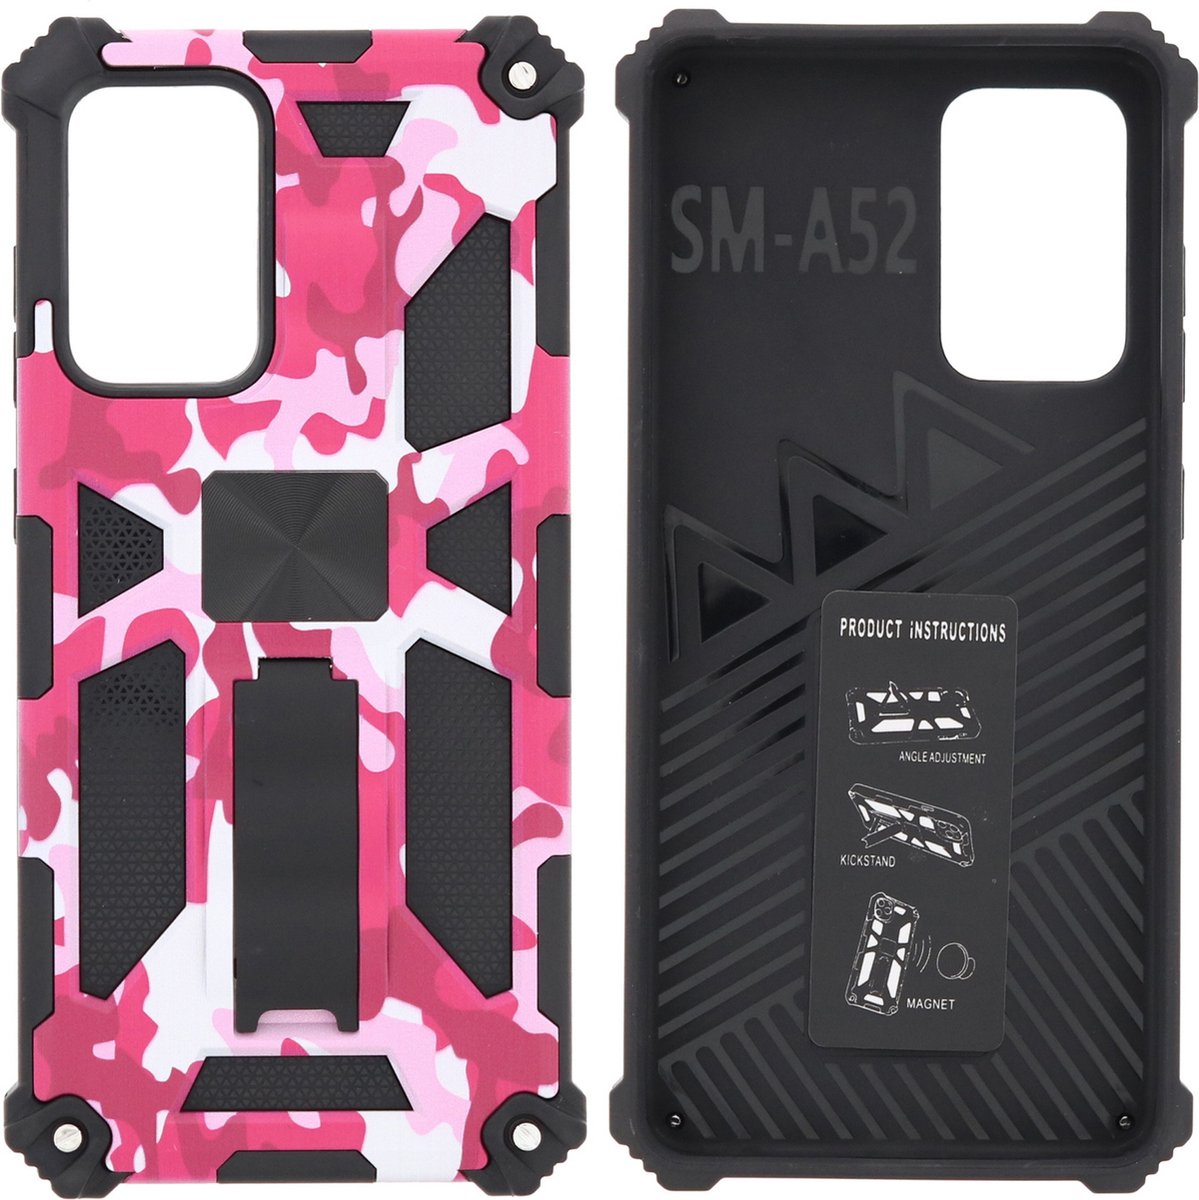 Hoesje Geschikt Voor Samsung Galaxy S20 Plus Hoesje - Rugged Extreme Backcover Camouflage met Kickstand - Pink